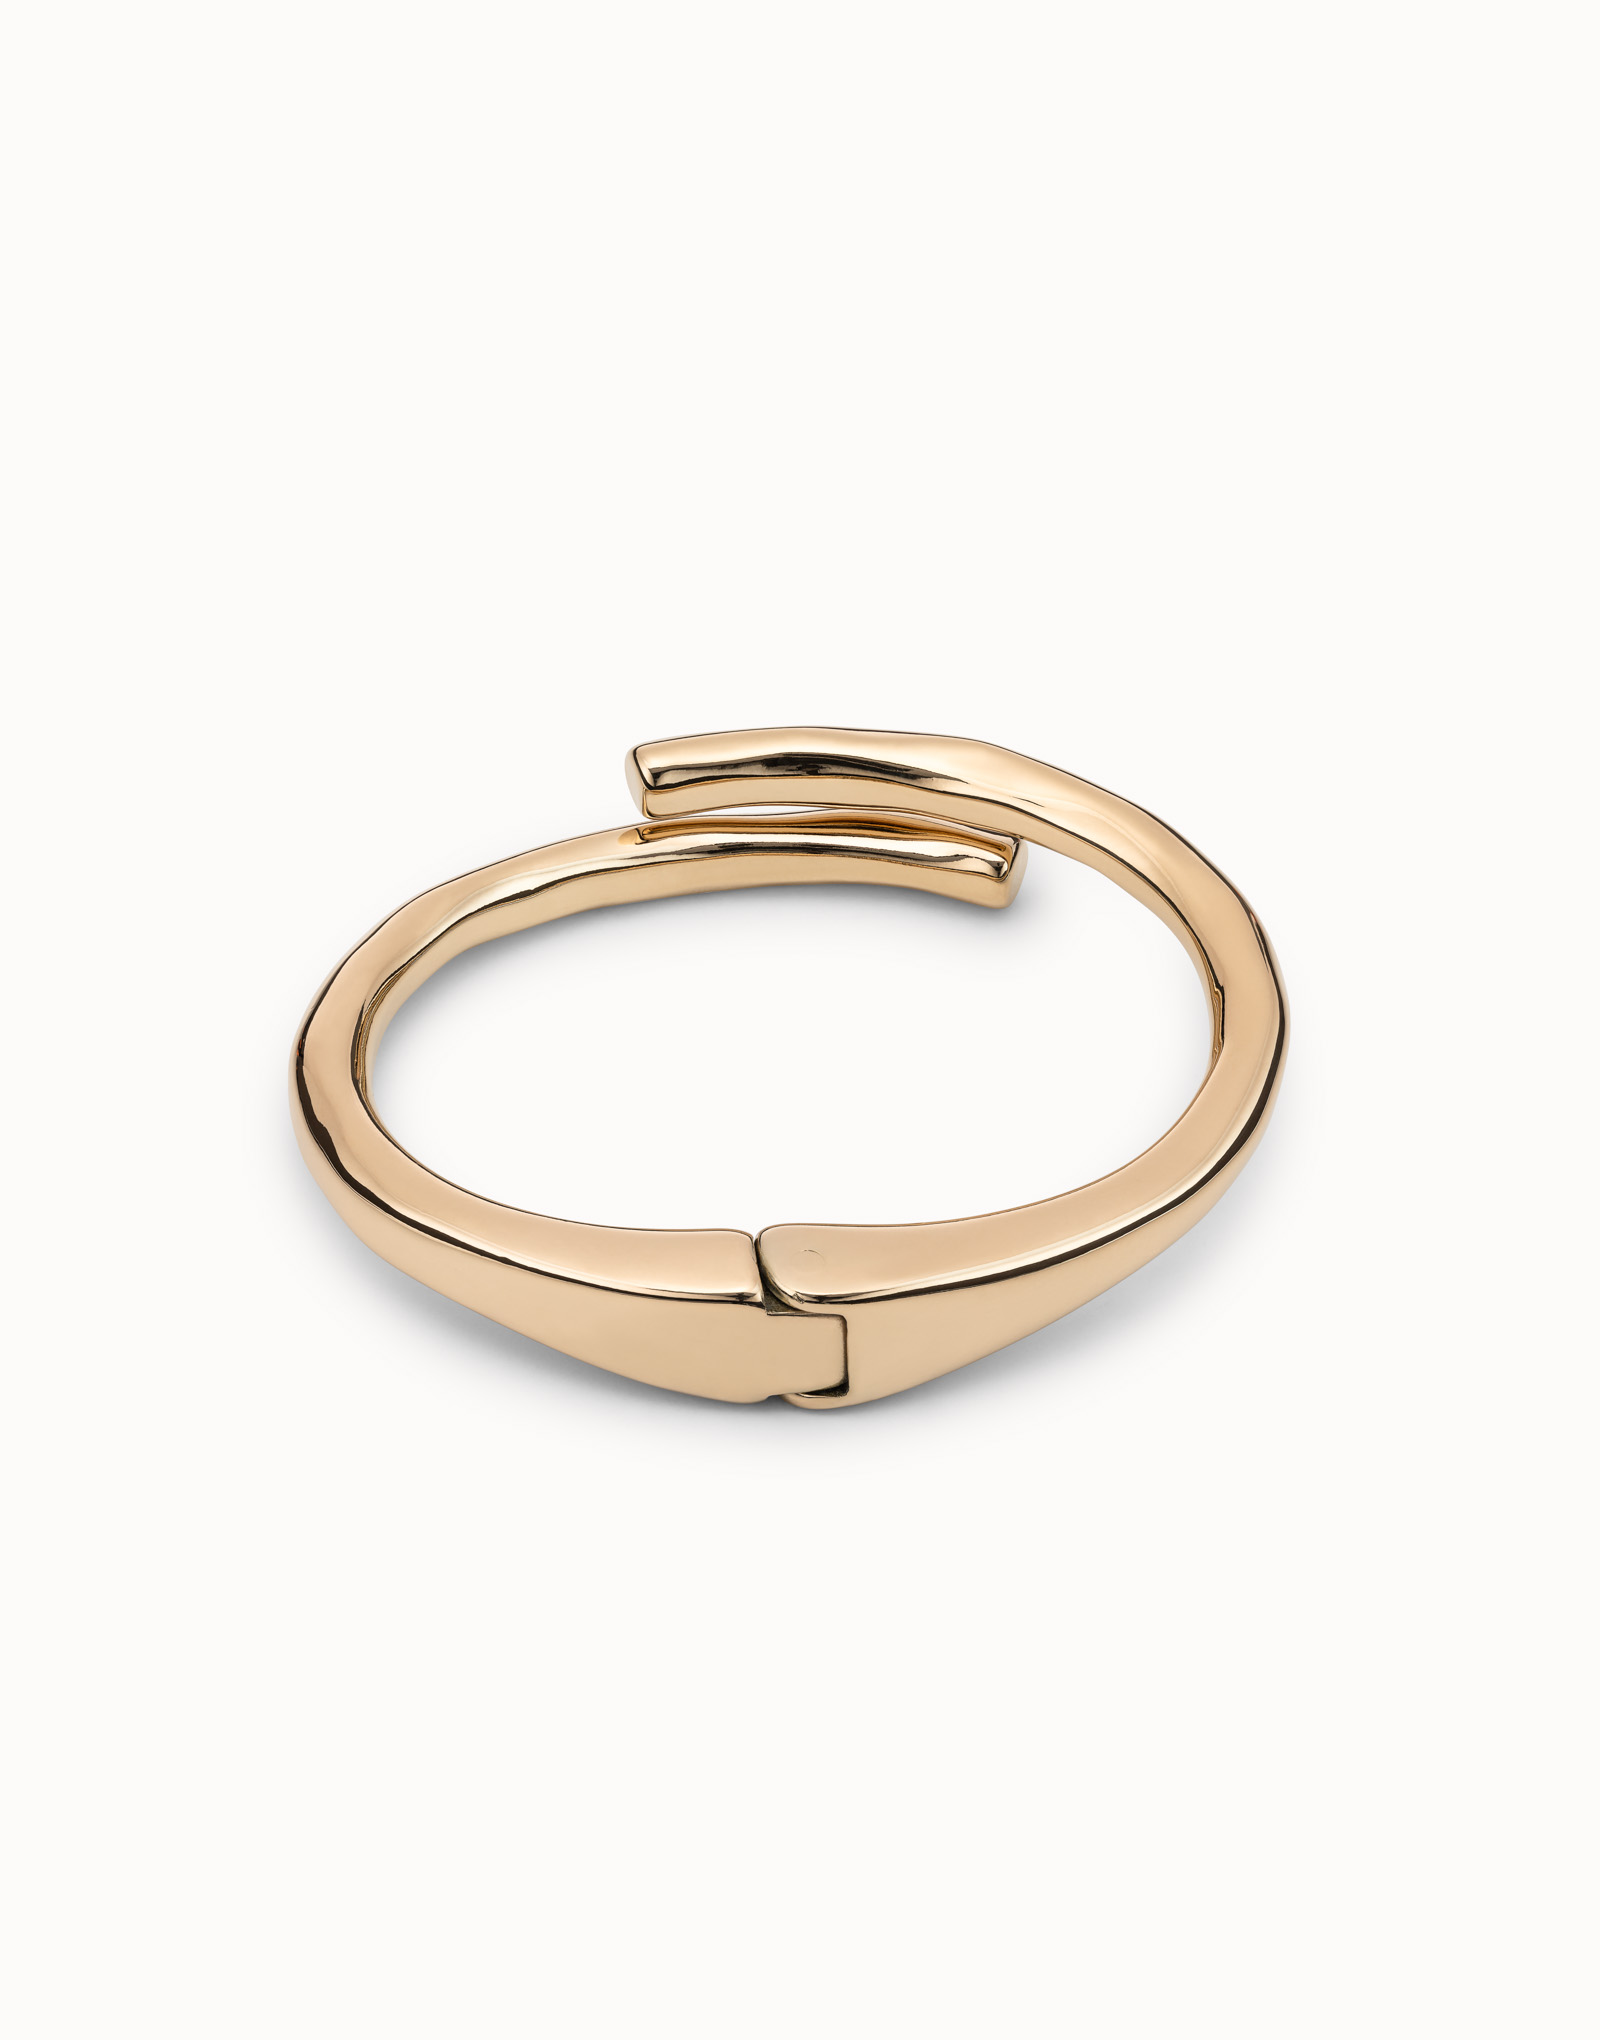 18K gold-plated tubular shaped bracelet with hidden spring, Golden, large image number null